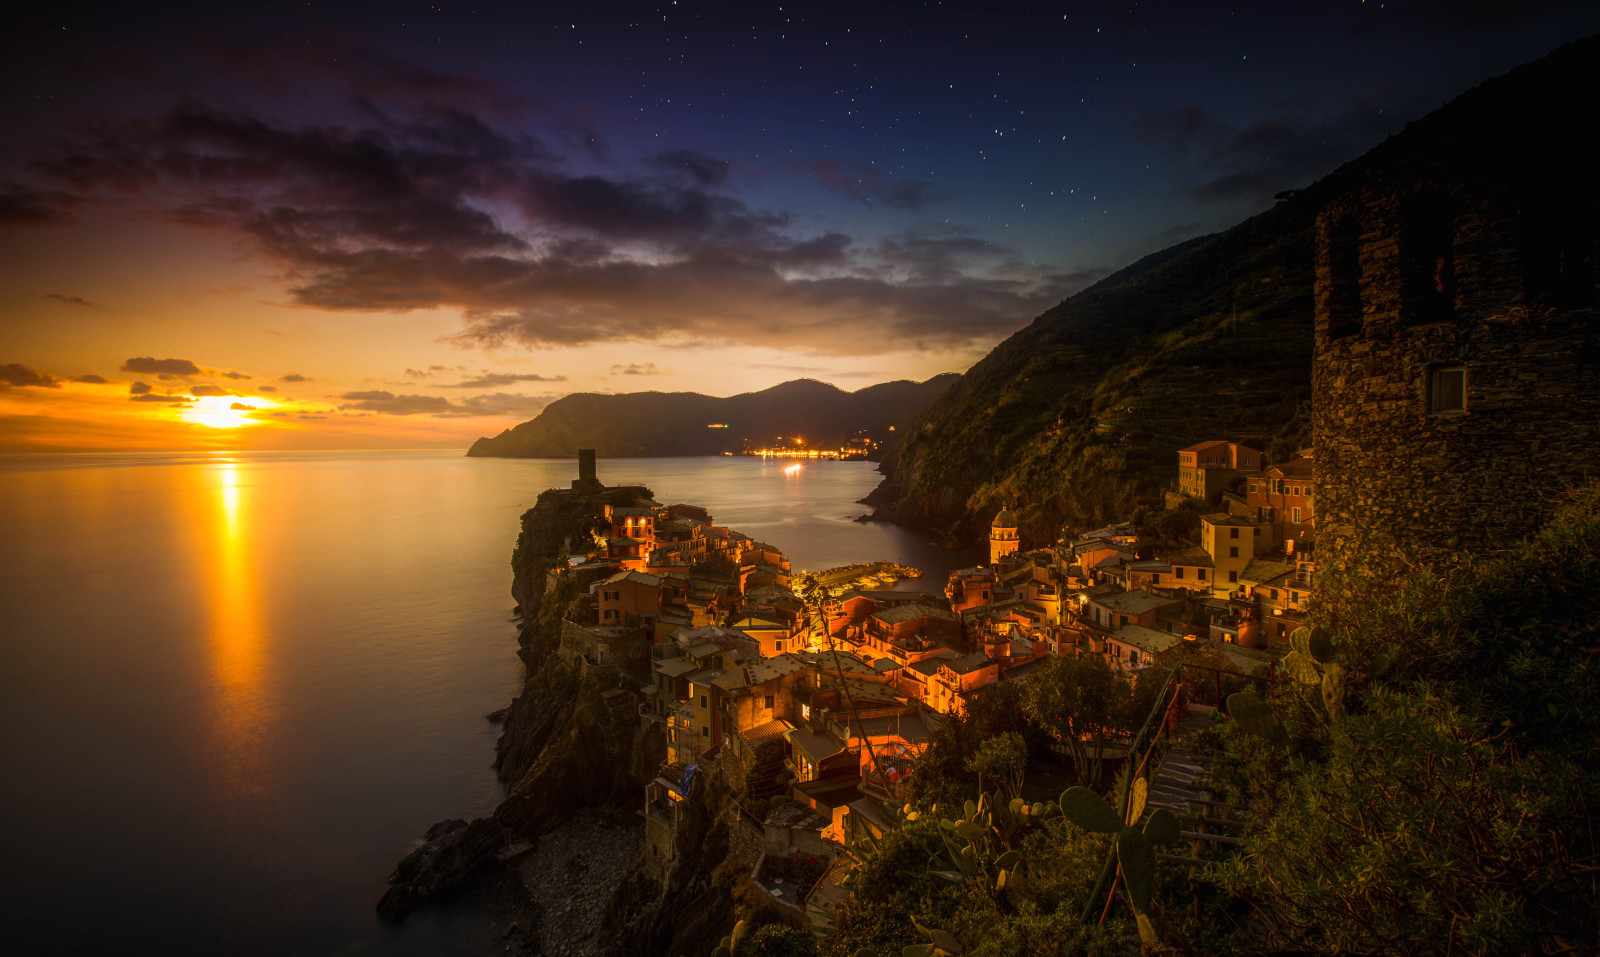 malam, matahari terbenam, laut, lampu, gunung, rumah, Italia, batu